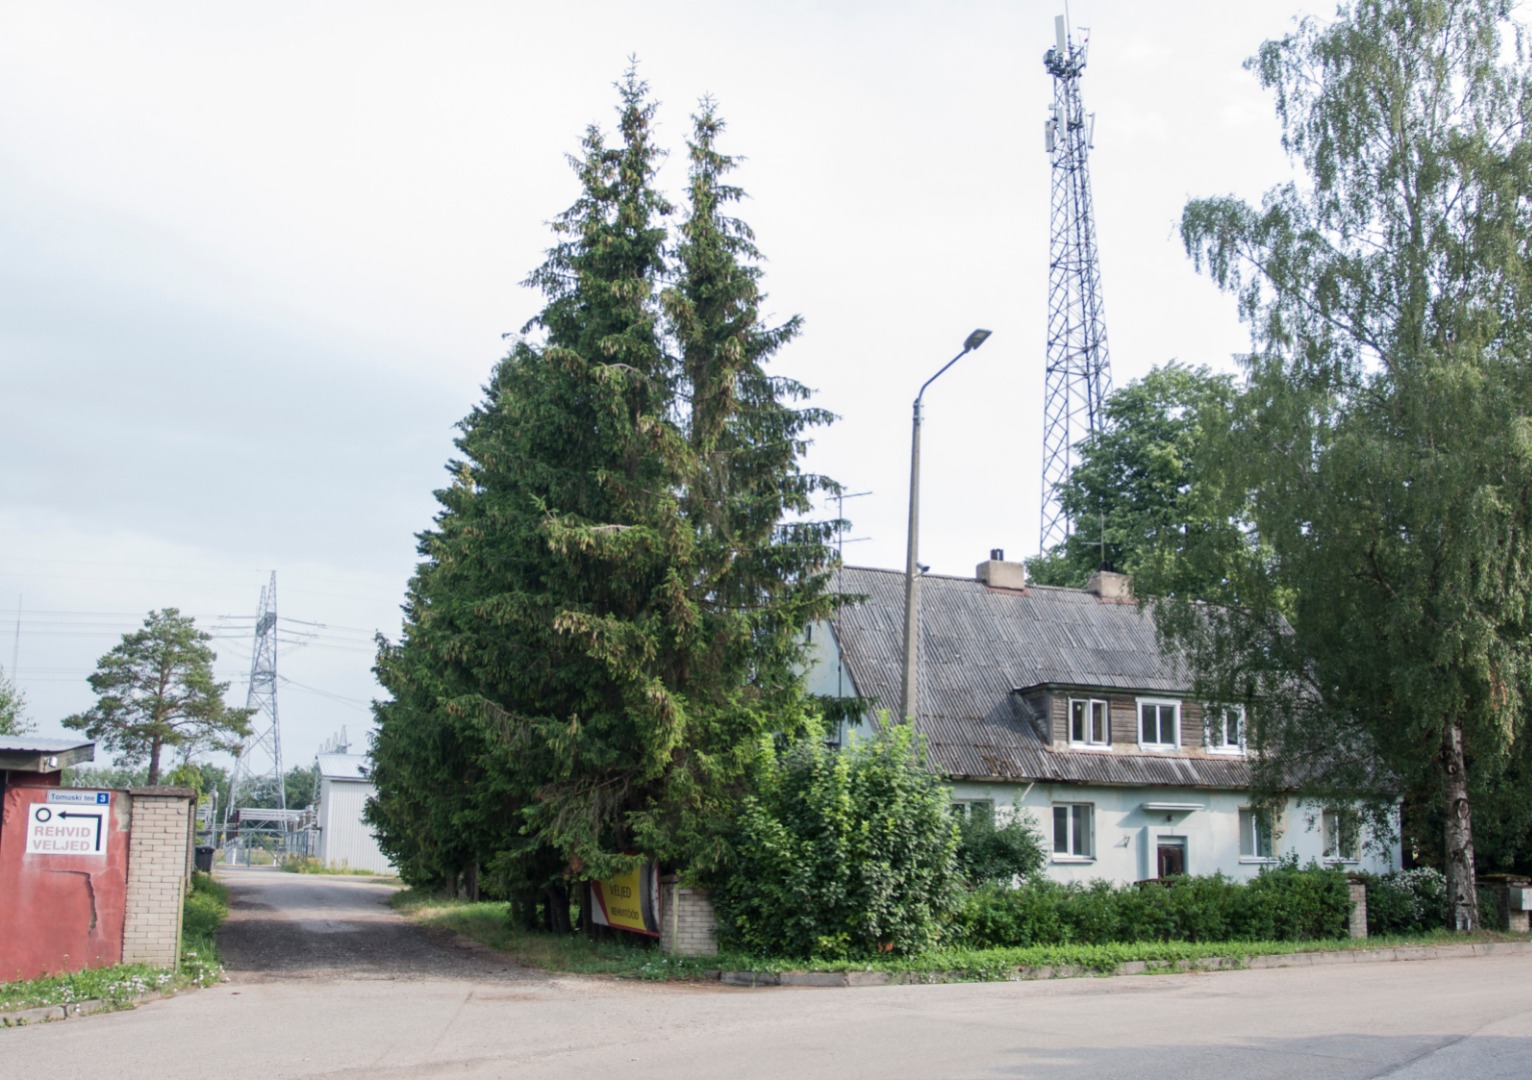 foto, Viljandimaa, Mustivere küla, Tomuski tee 7, elektrialajaam, elamu, 1959, foto L. Vellema rephoto